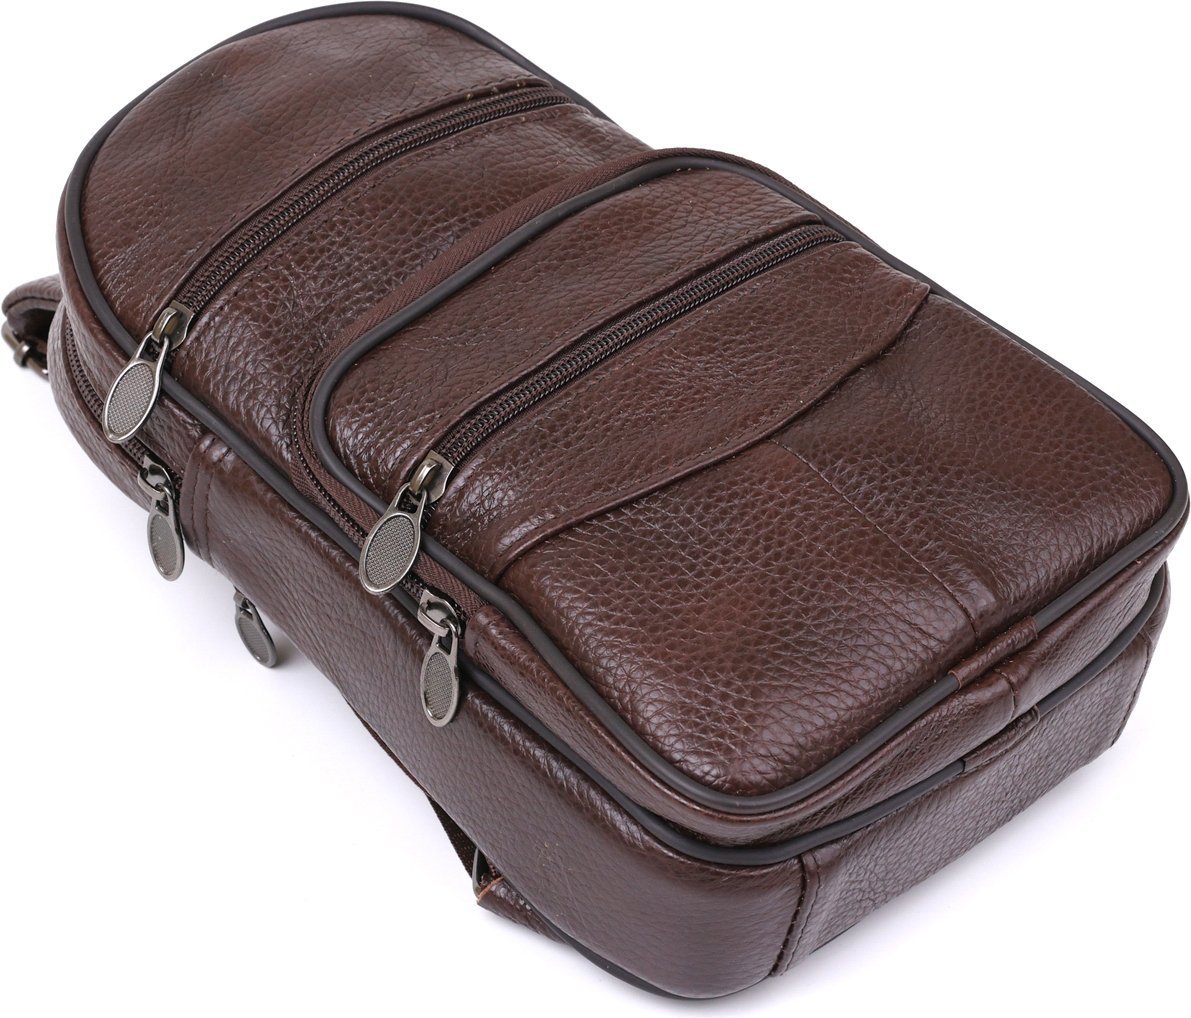 Сумка - рюкзак мужская через одно плечо коричневого цвета VINTAGE STYLE (14986)